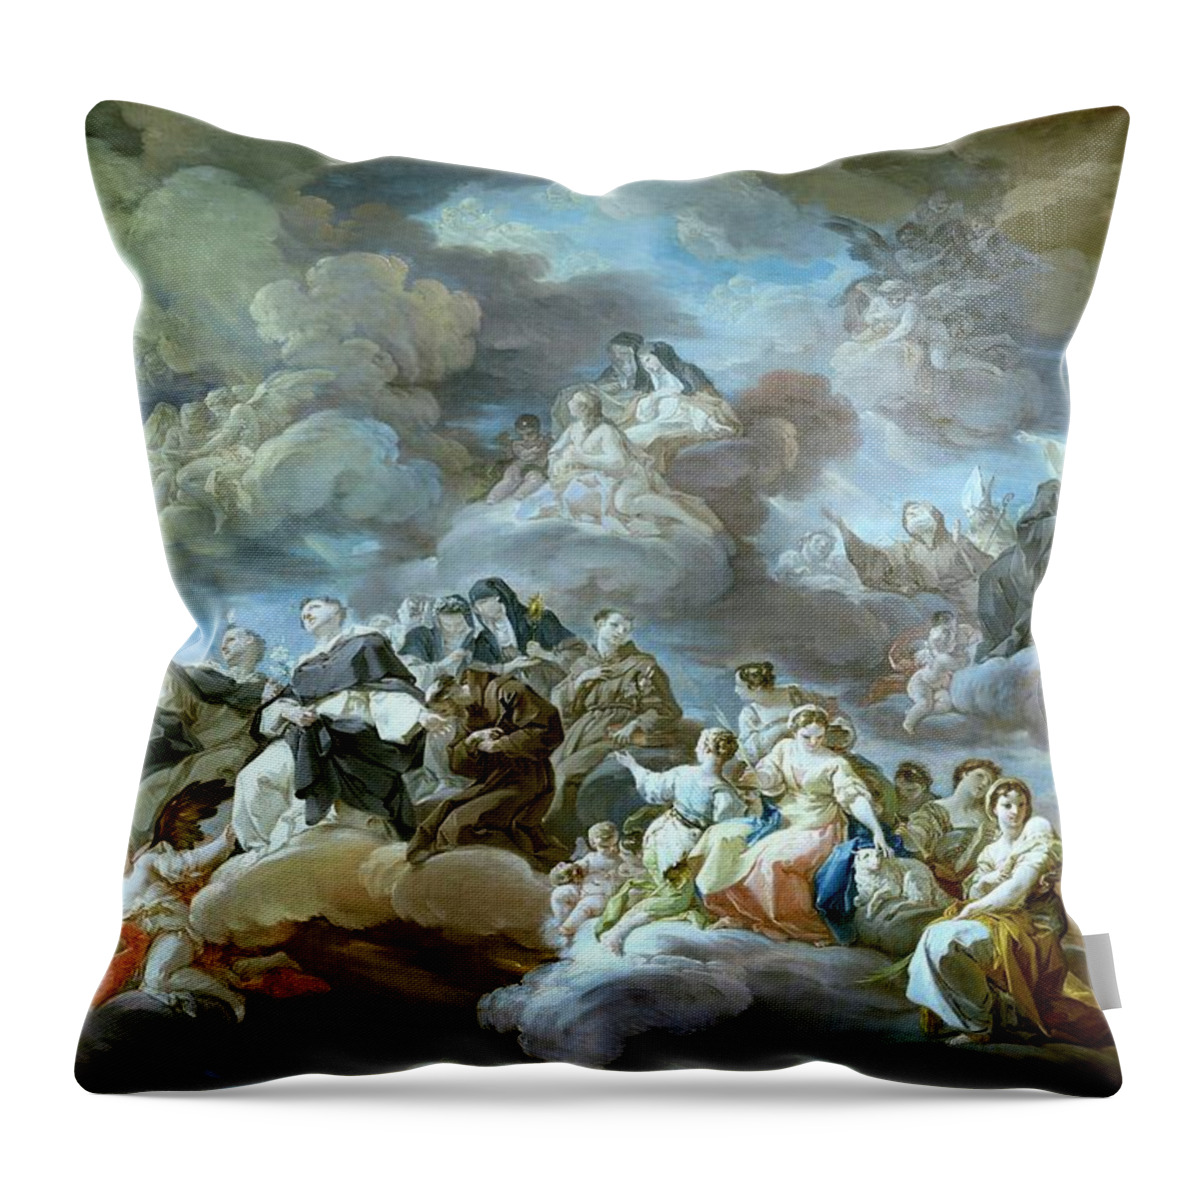 Corrado Giaquinto Throw Pillow featuring the painting Corrado Giaquinto / 'Paradise', 1755-1756, Italian School, Oil on canvas, 97,5 cm x 140 cm, P05118. by Corrado Giaquinto -c 1703-1765-